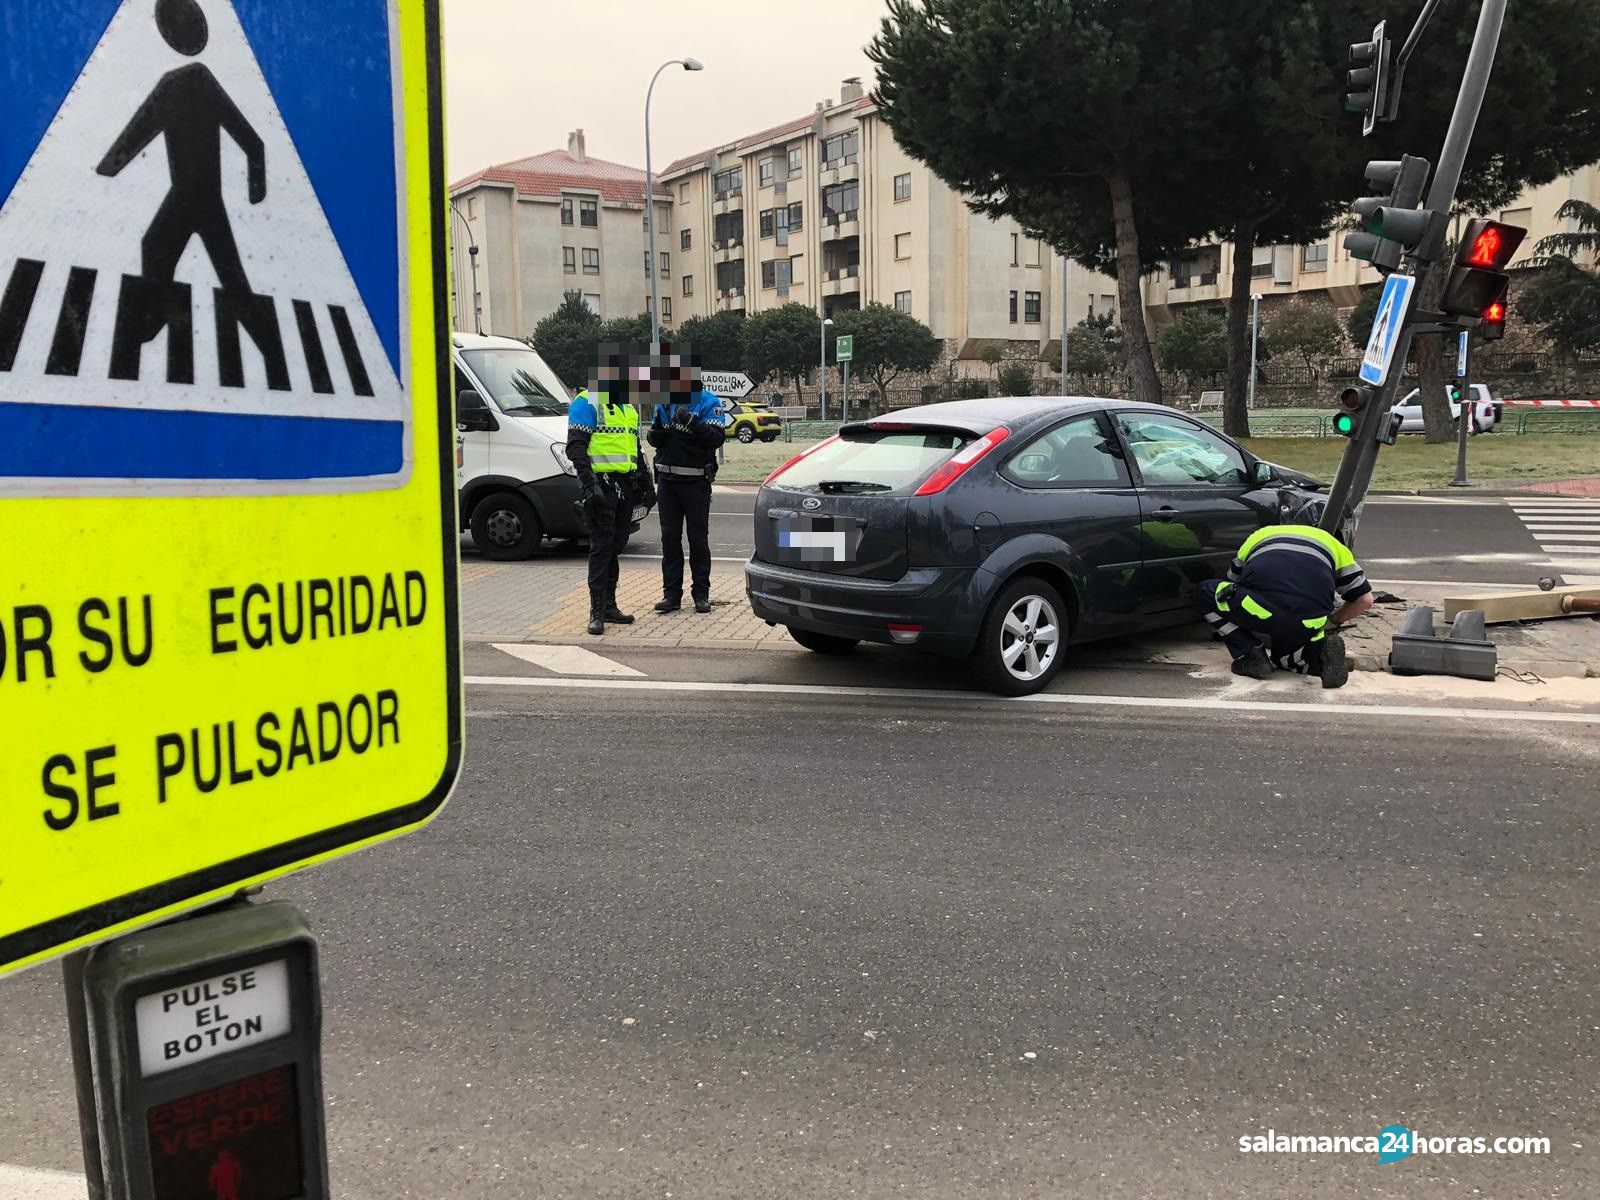  Accidente Reyes de España semáforo (7) 